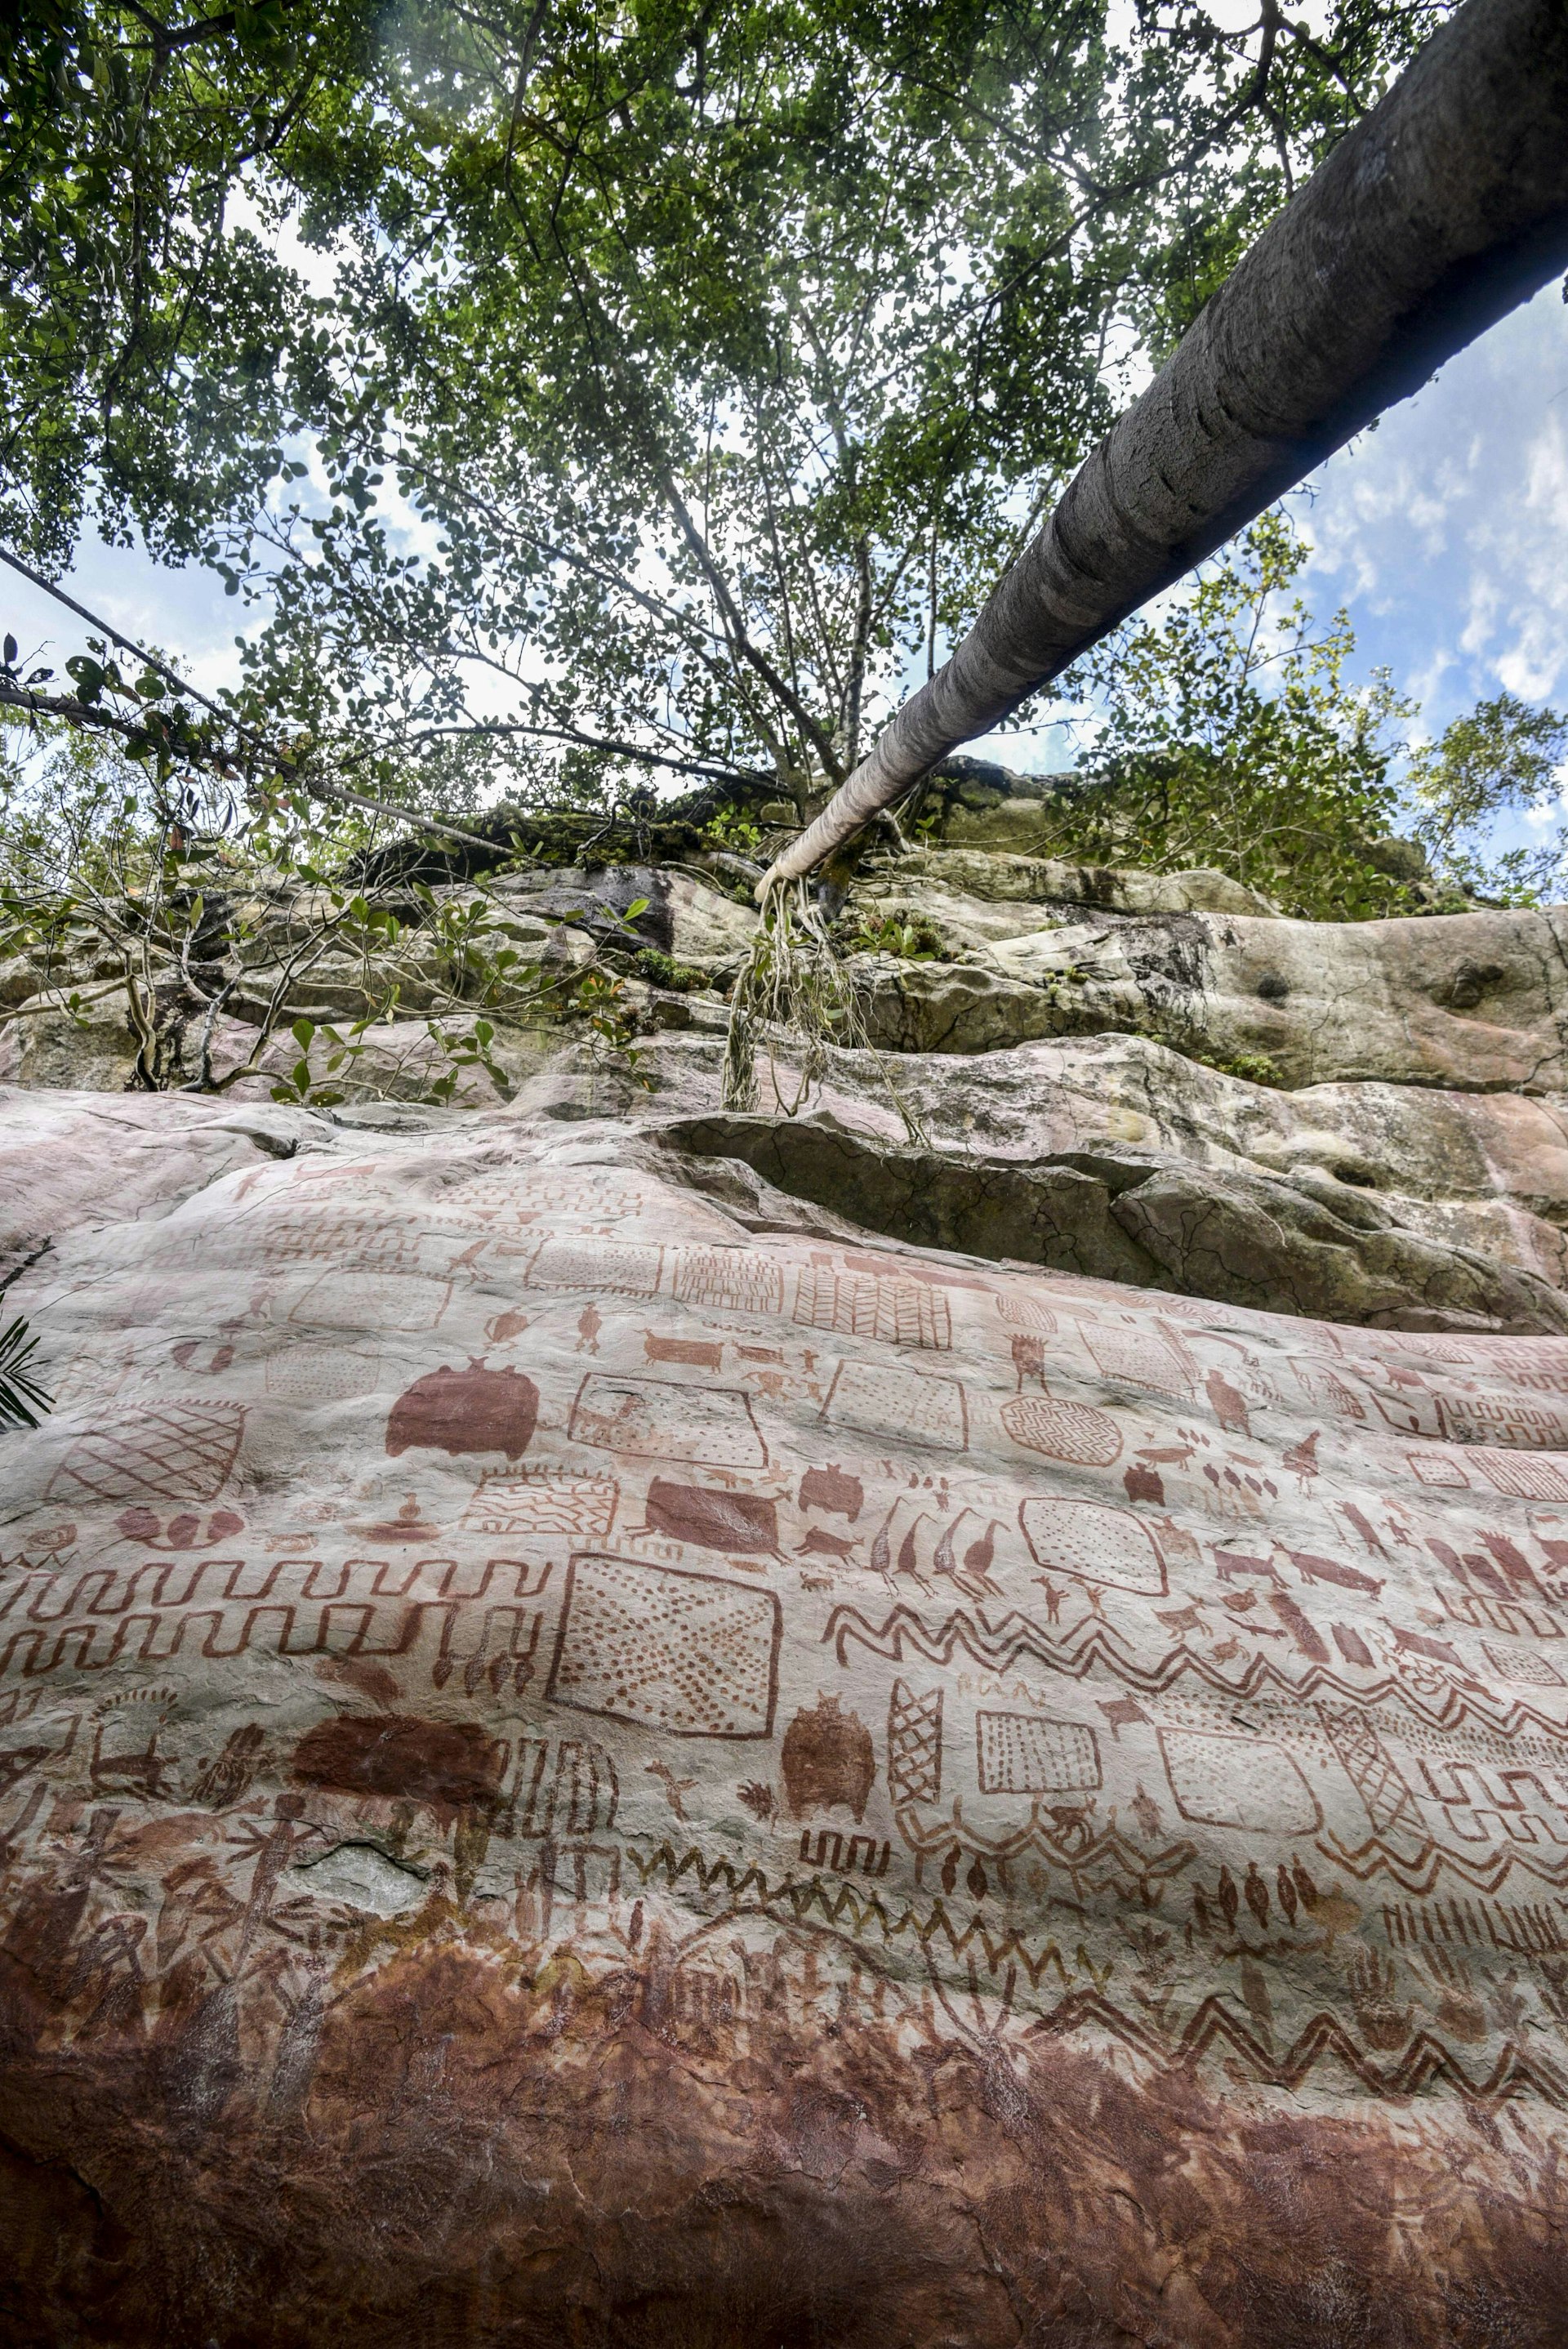 View of rock art at the Cerro Azul hill in the Serrania La Lindosa